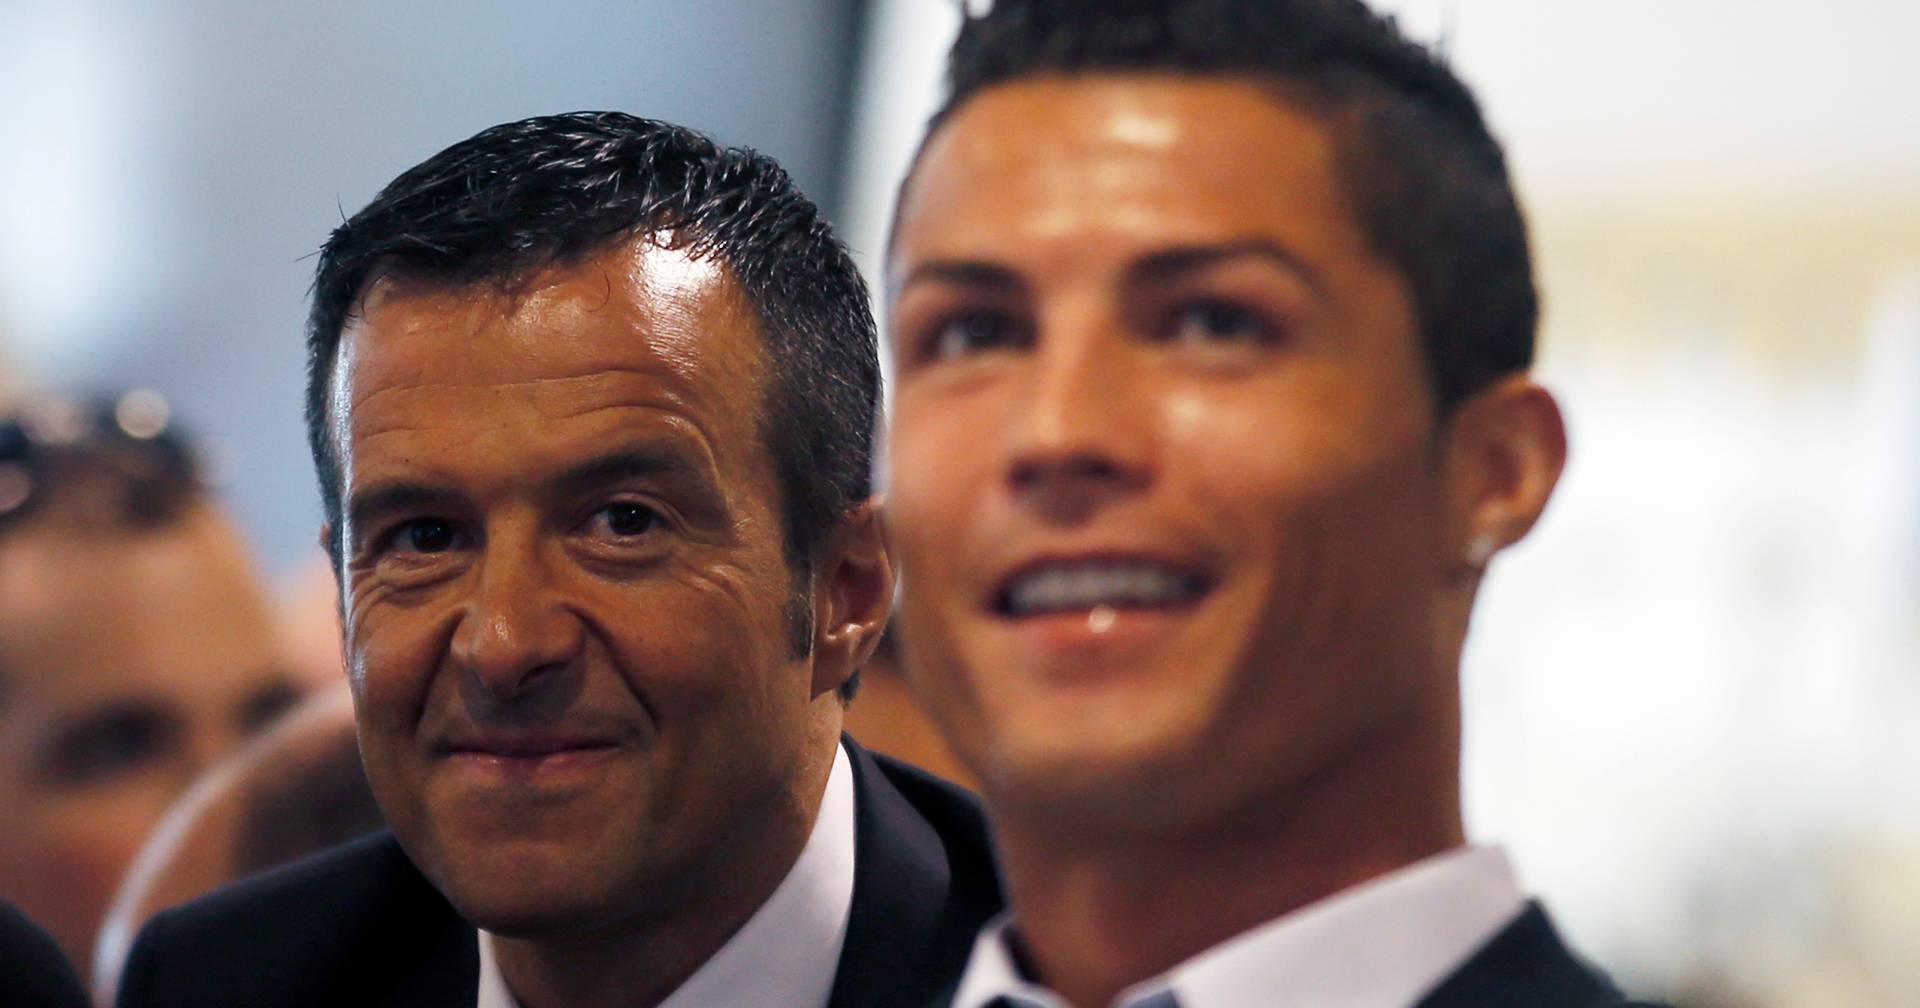 ¿La relación entre Cristiano Ronaldo y Jorge Mendes en crisis?  España habla de «tensiones crecientes»